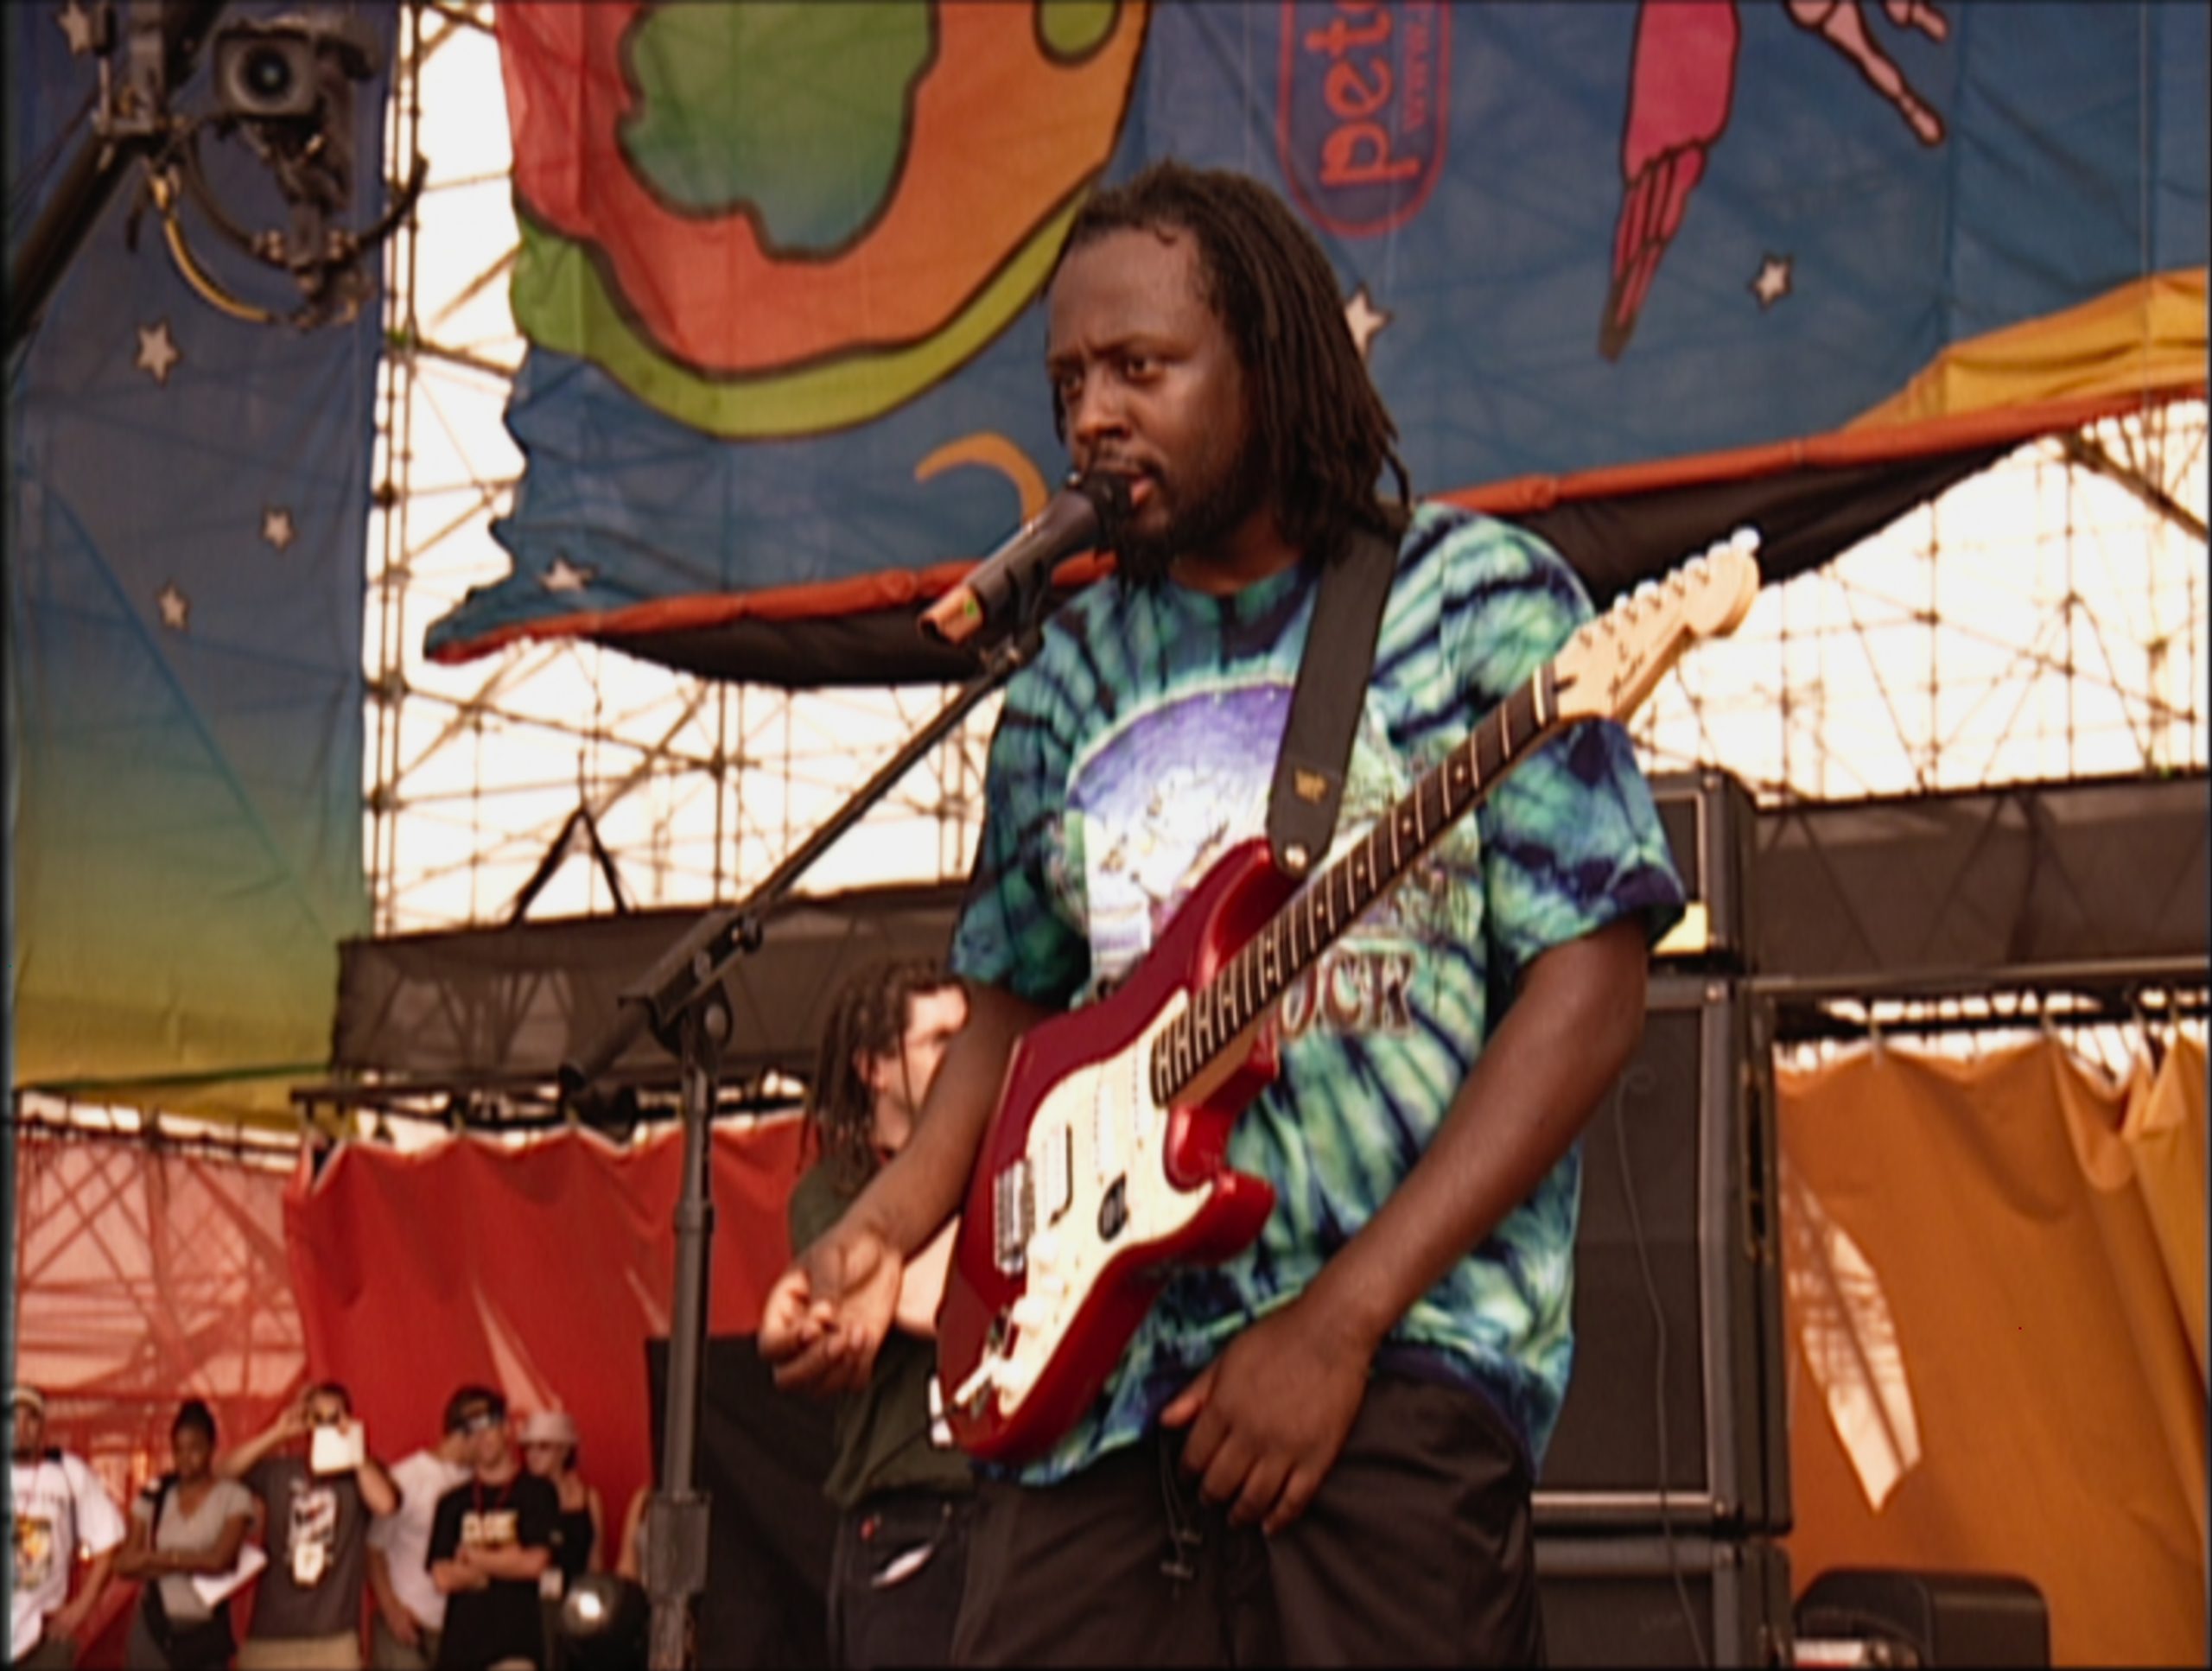 Performer at Woodstock 99